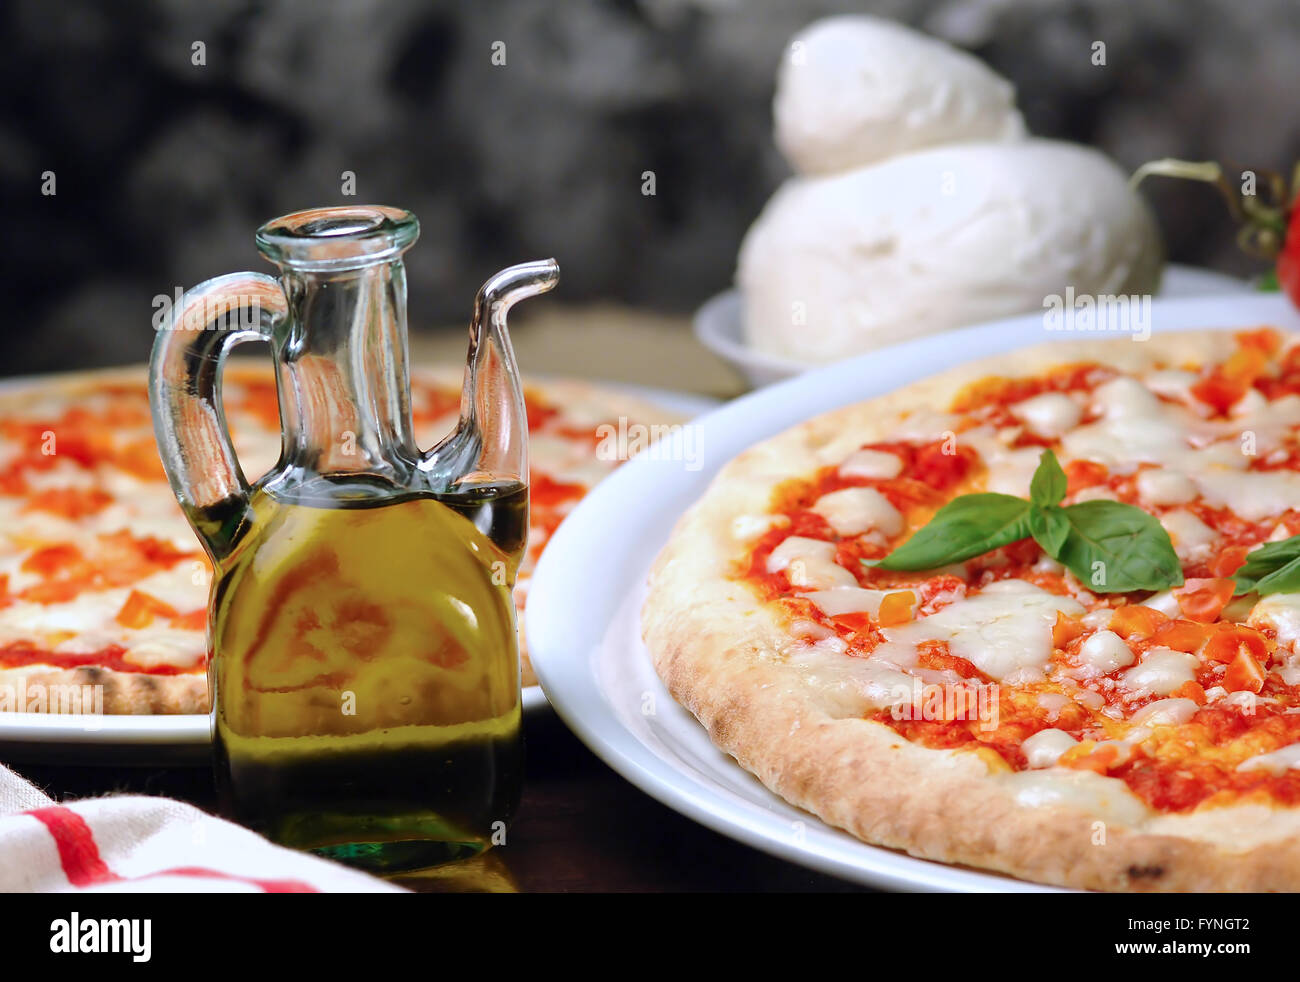 La tomate et mozzarella pizza à l'huile d'olive bouteille sur la table Banque D'Images